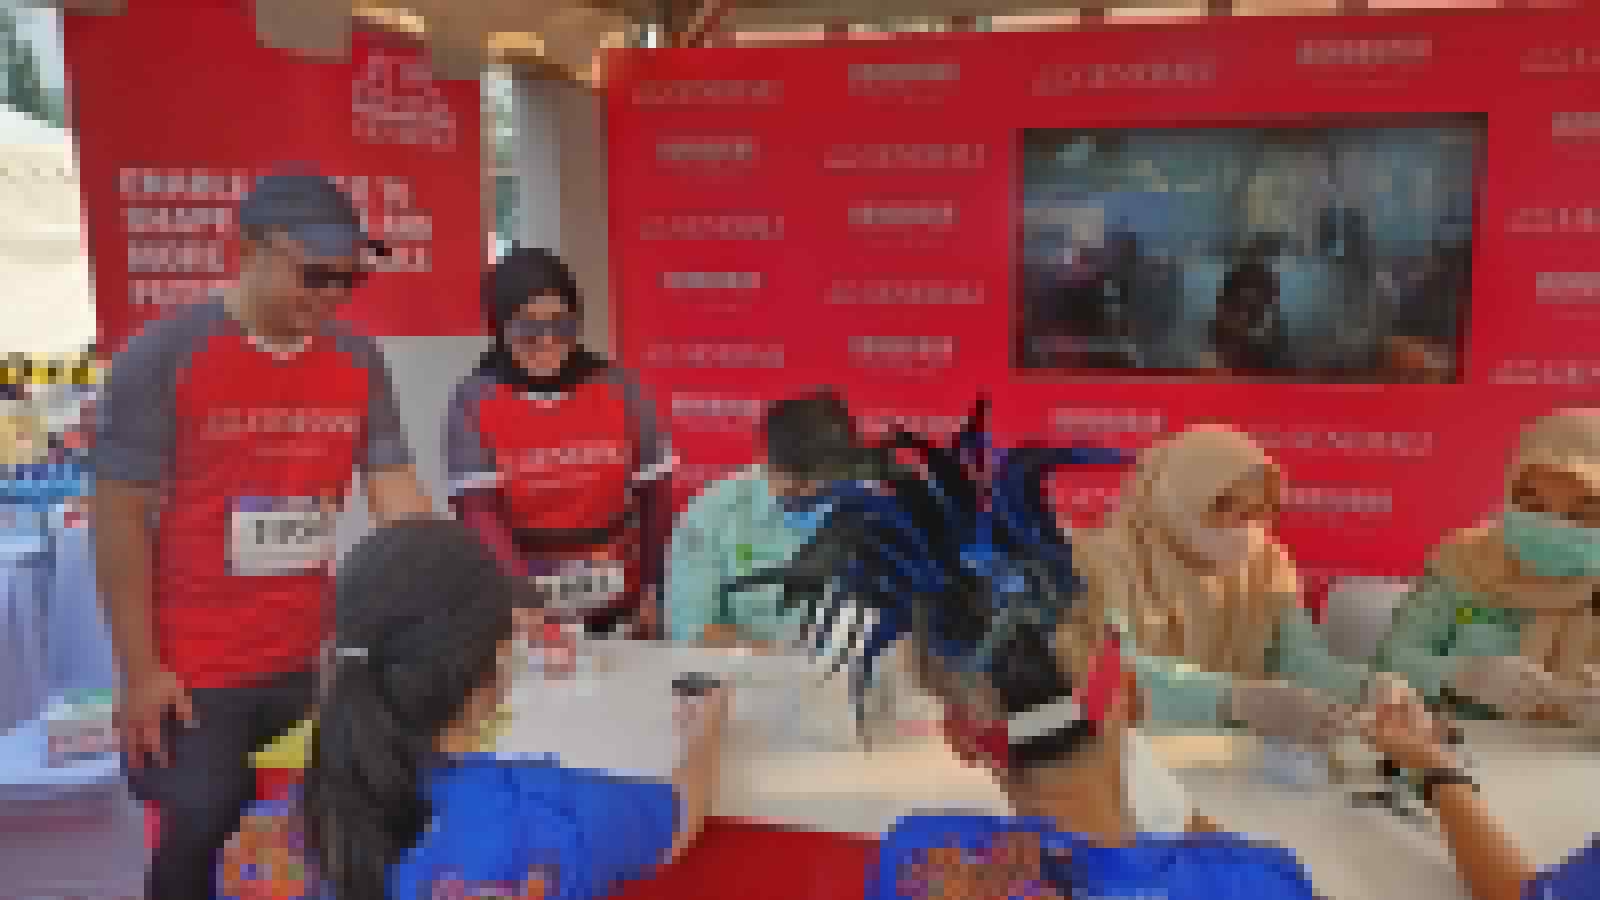 Generali Indonesia Promosikan Pentingnya Pola Hidup Sehat ke Masyarakat Palembang